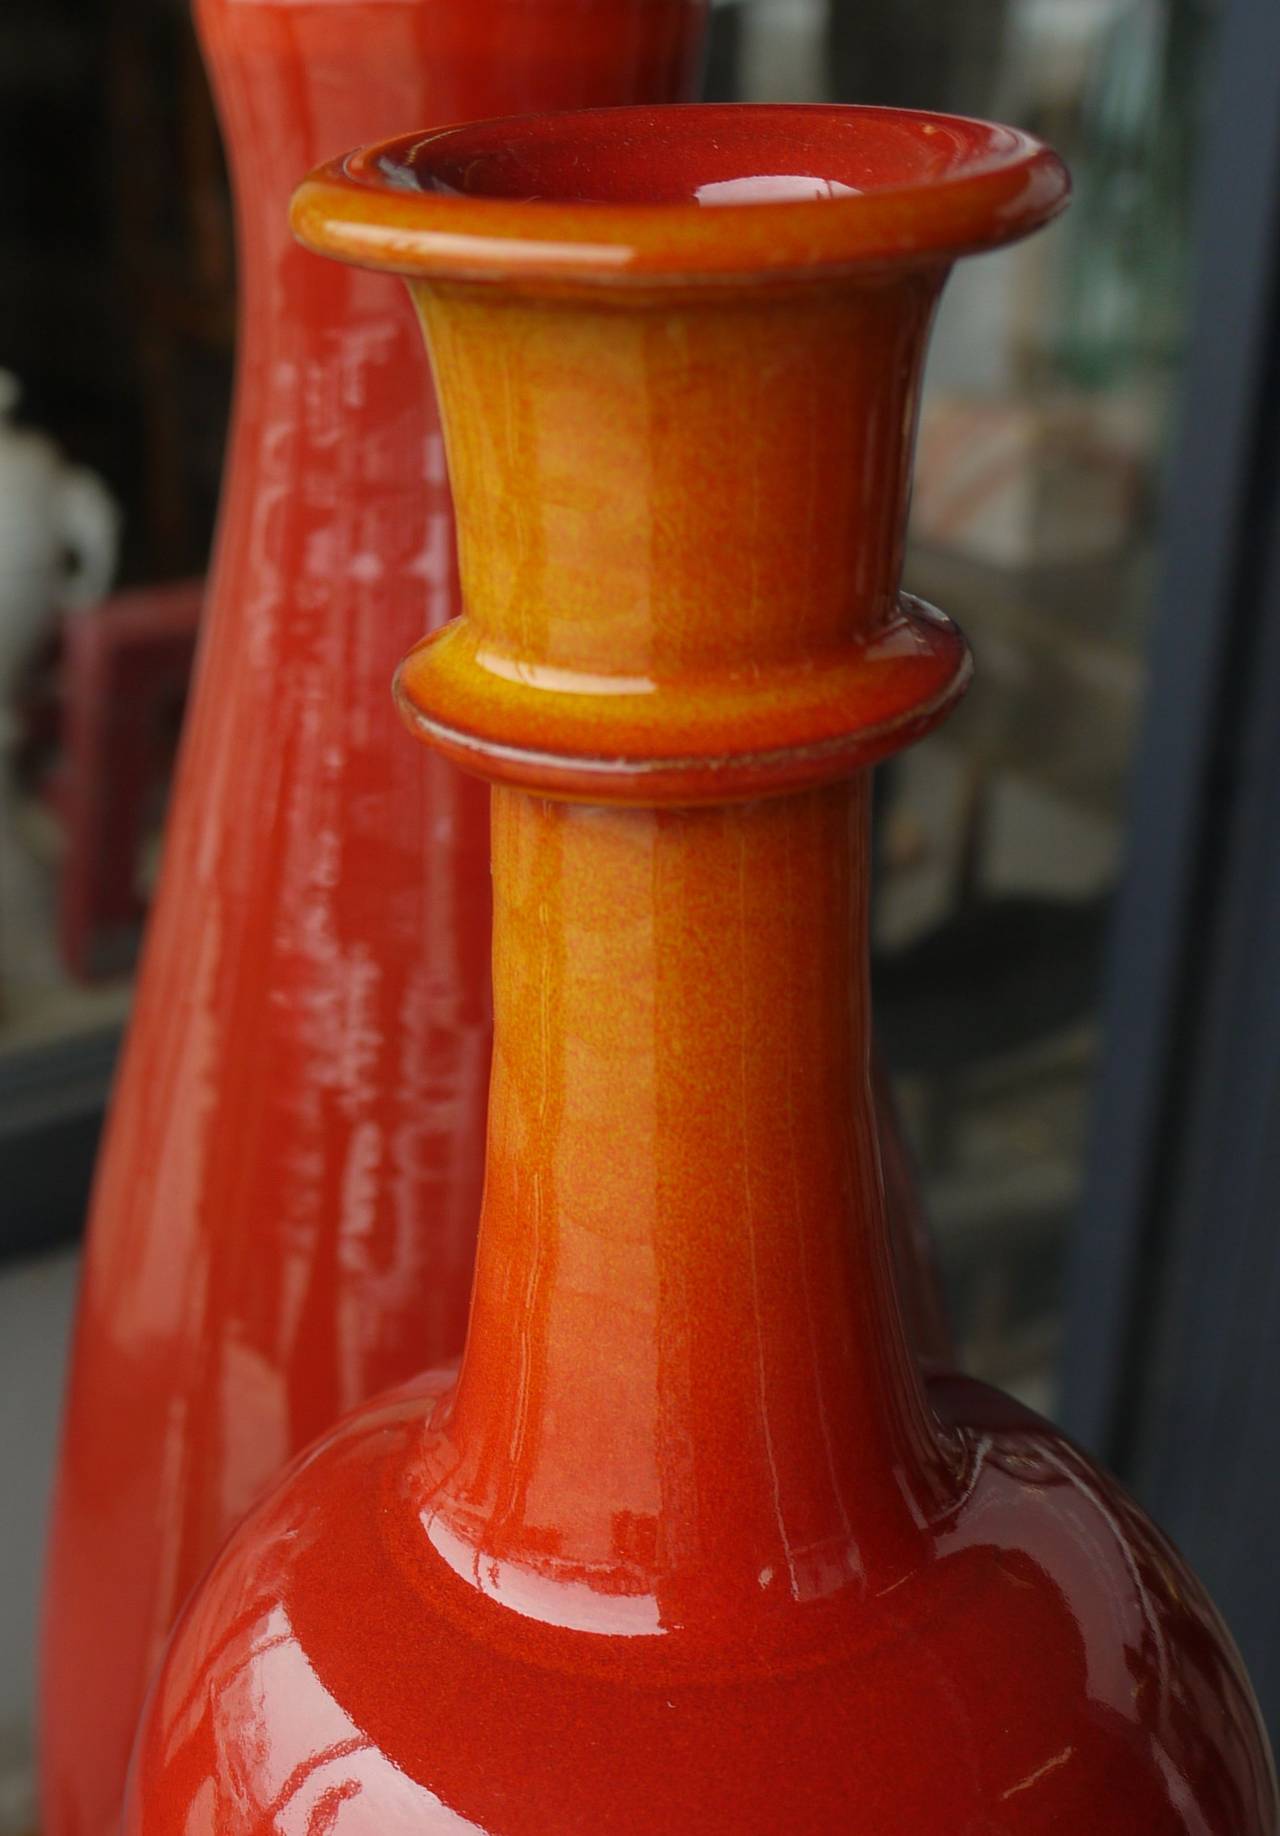 Atemberaubende Gruppe italienischer Keramikvasen in verschiedenen Orange- und Rottönen in Form von Flaschenvasen aus Italien. Zwei der Vasen sind mit Studio Esposito und eine mit Duca di Camastra signiert. Die größte Vase hat einen Durchmesser von